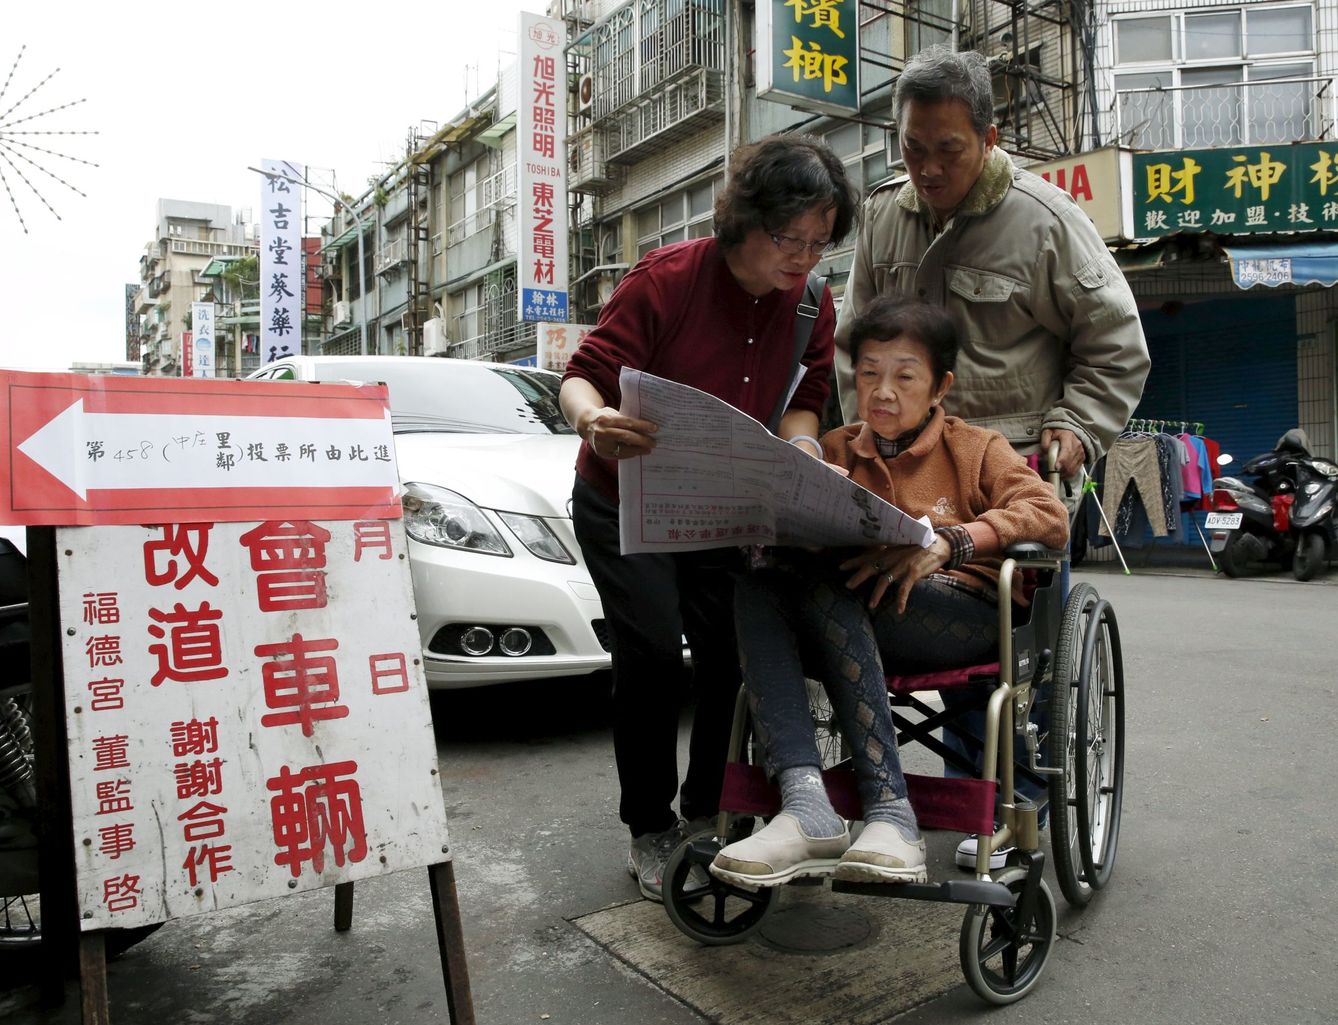 Una familia revisa las listas de candidatos antes de entrar a votar en Taipei, la capital de Taiwán, el 16 de enero de 2016. (Reuters)